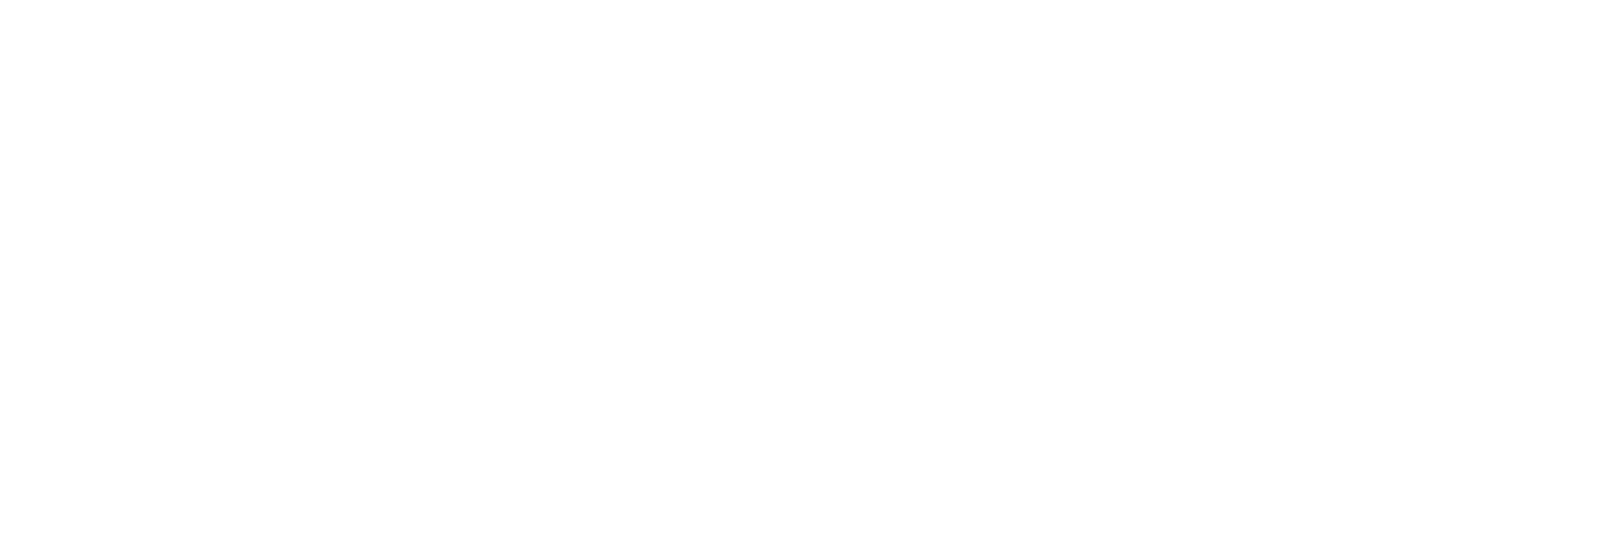 TECOM-Group-logo